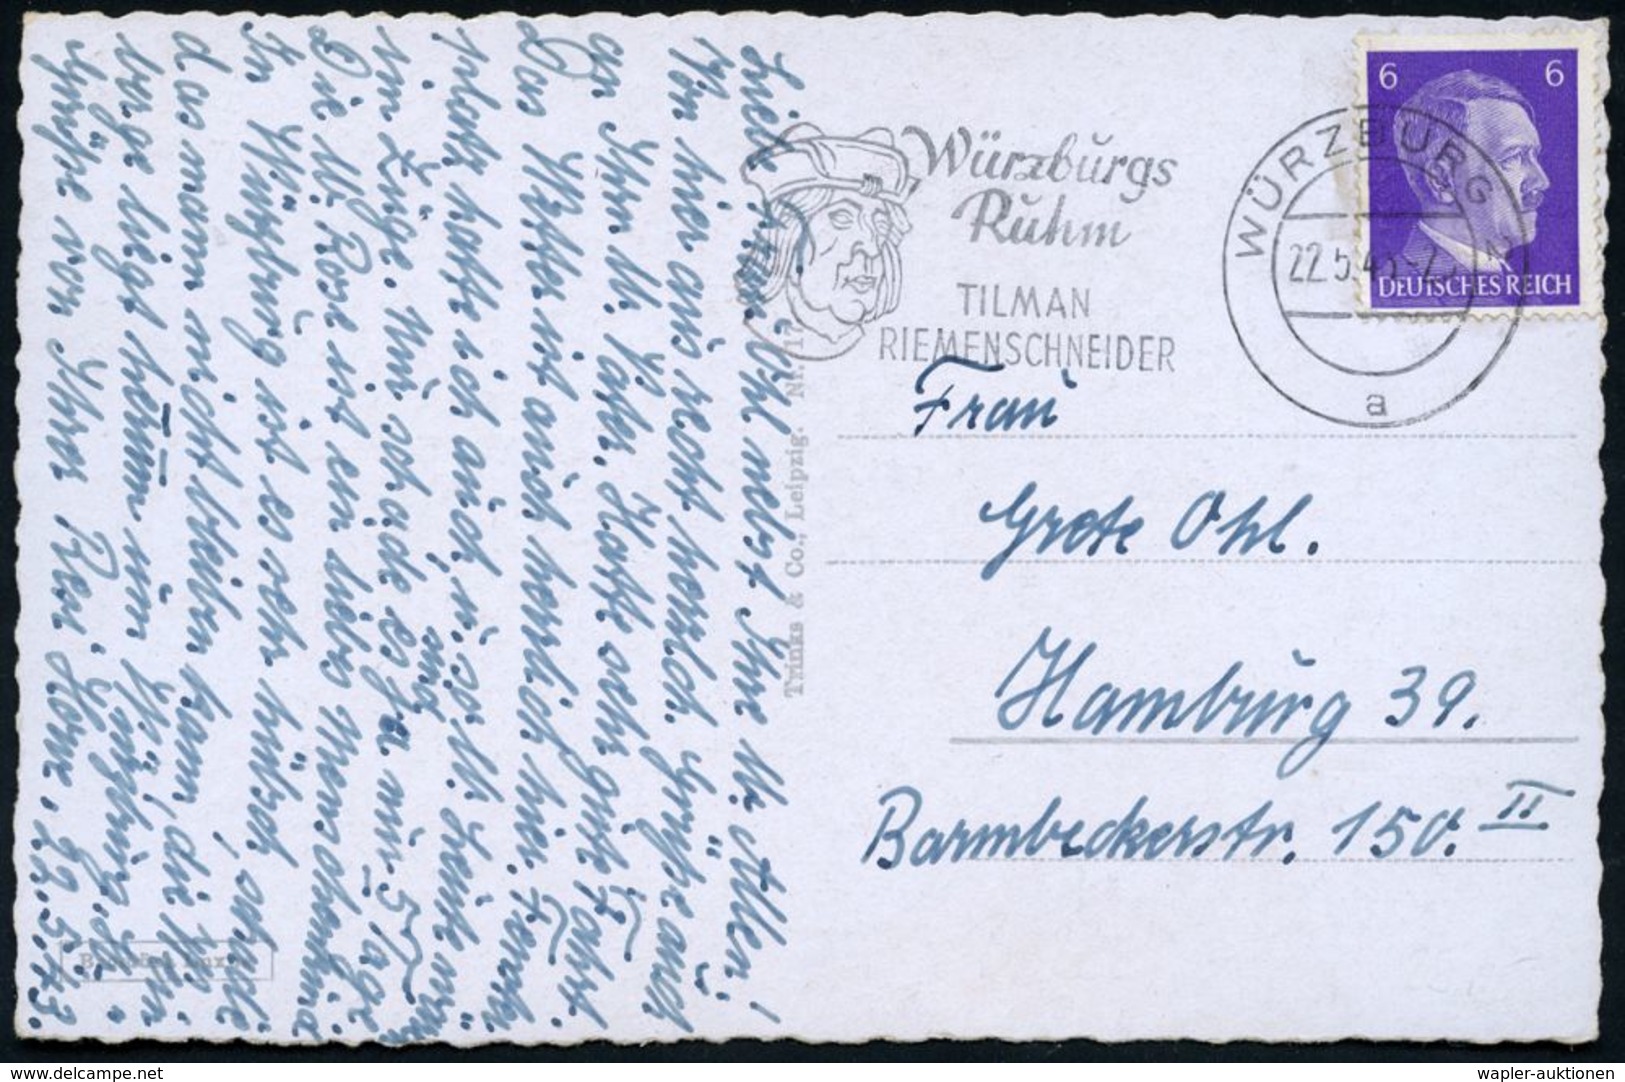 WÜRZBURG 2/ A/ Würzburgs/ Ruhm/ TILMAN/ RIEMENSCHNEIDER 1943 (22.5.) Seltener  MWSt = Kopfbild Riemenschneider (mit Mütz - Beeldhouwkunst